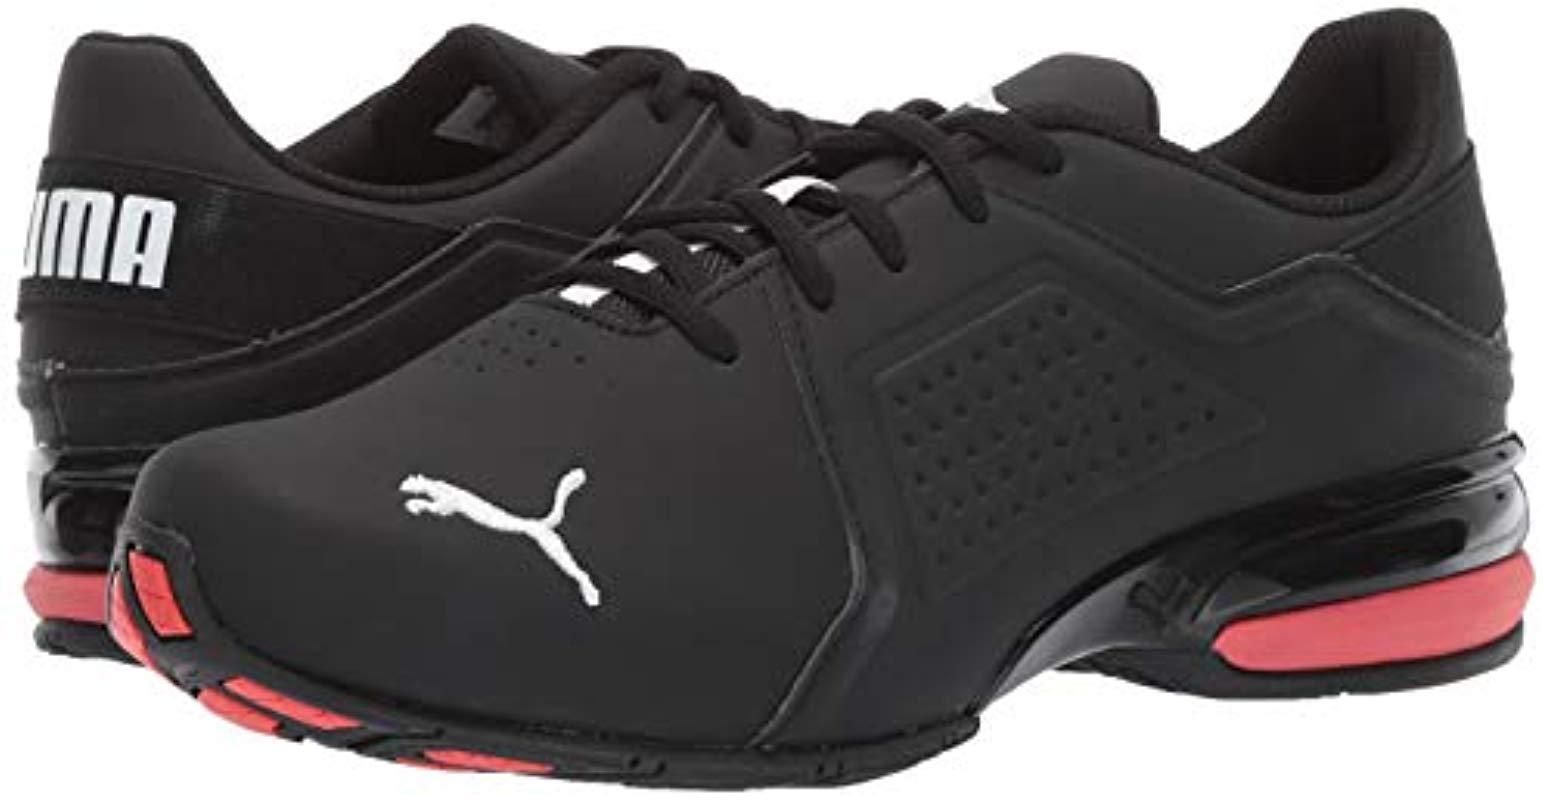 PUMA Viz Runner Sneaker in Black/White (Black) for Men - Save 23% - Lyst